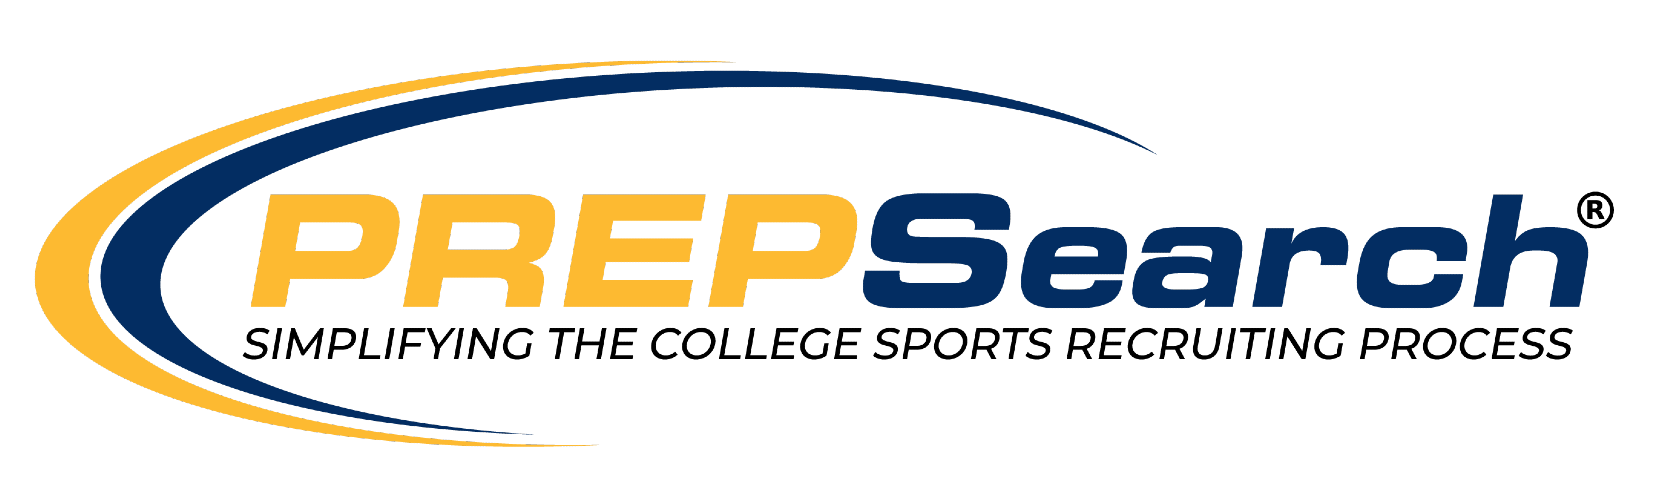 prepsearch logo